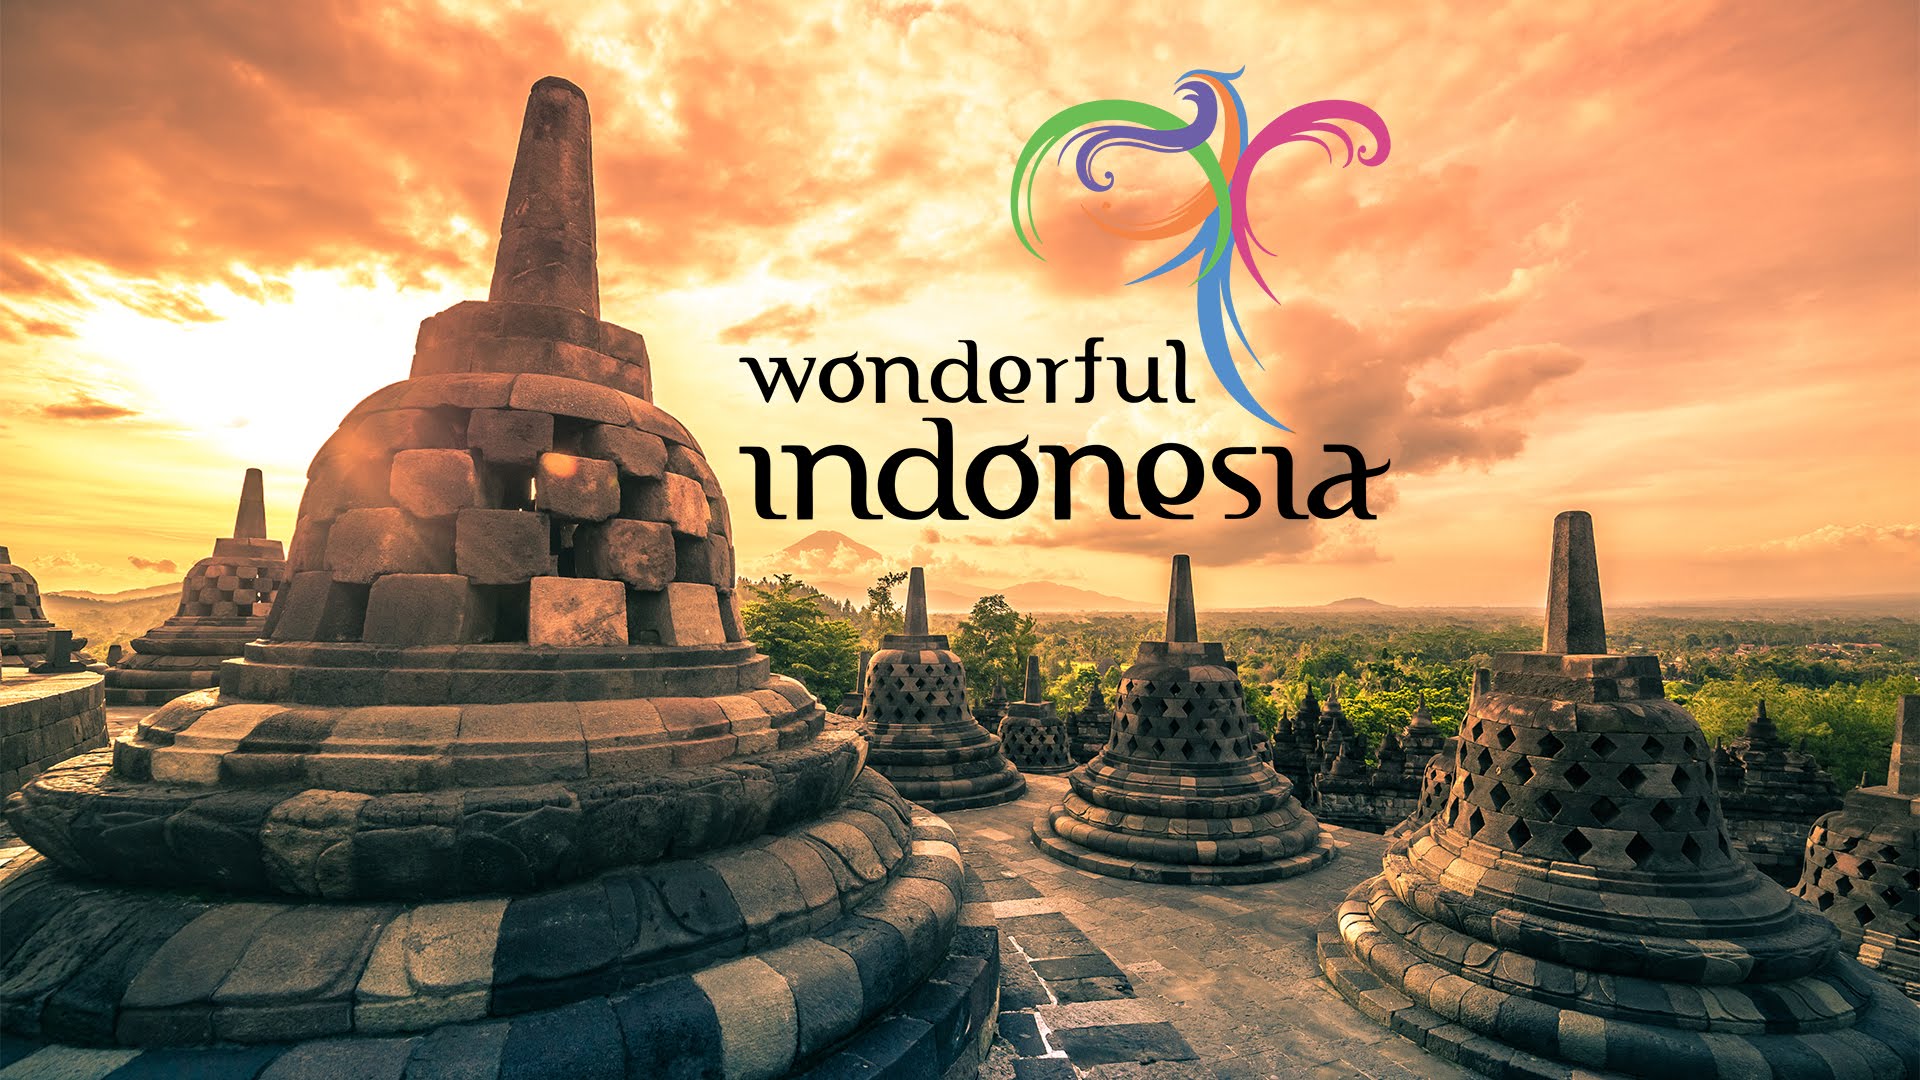 Wonderful Indonesia menjadi salah satu program unggulan pemerintah Indonesia dalam mempromosikan pariwisata Indonesia ke dunia (foto: Youtube Wonderful Indonesia)